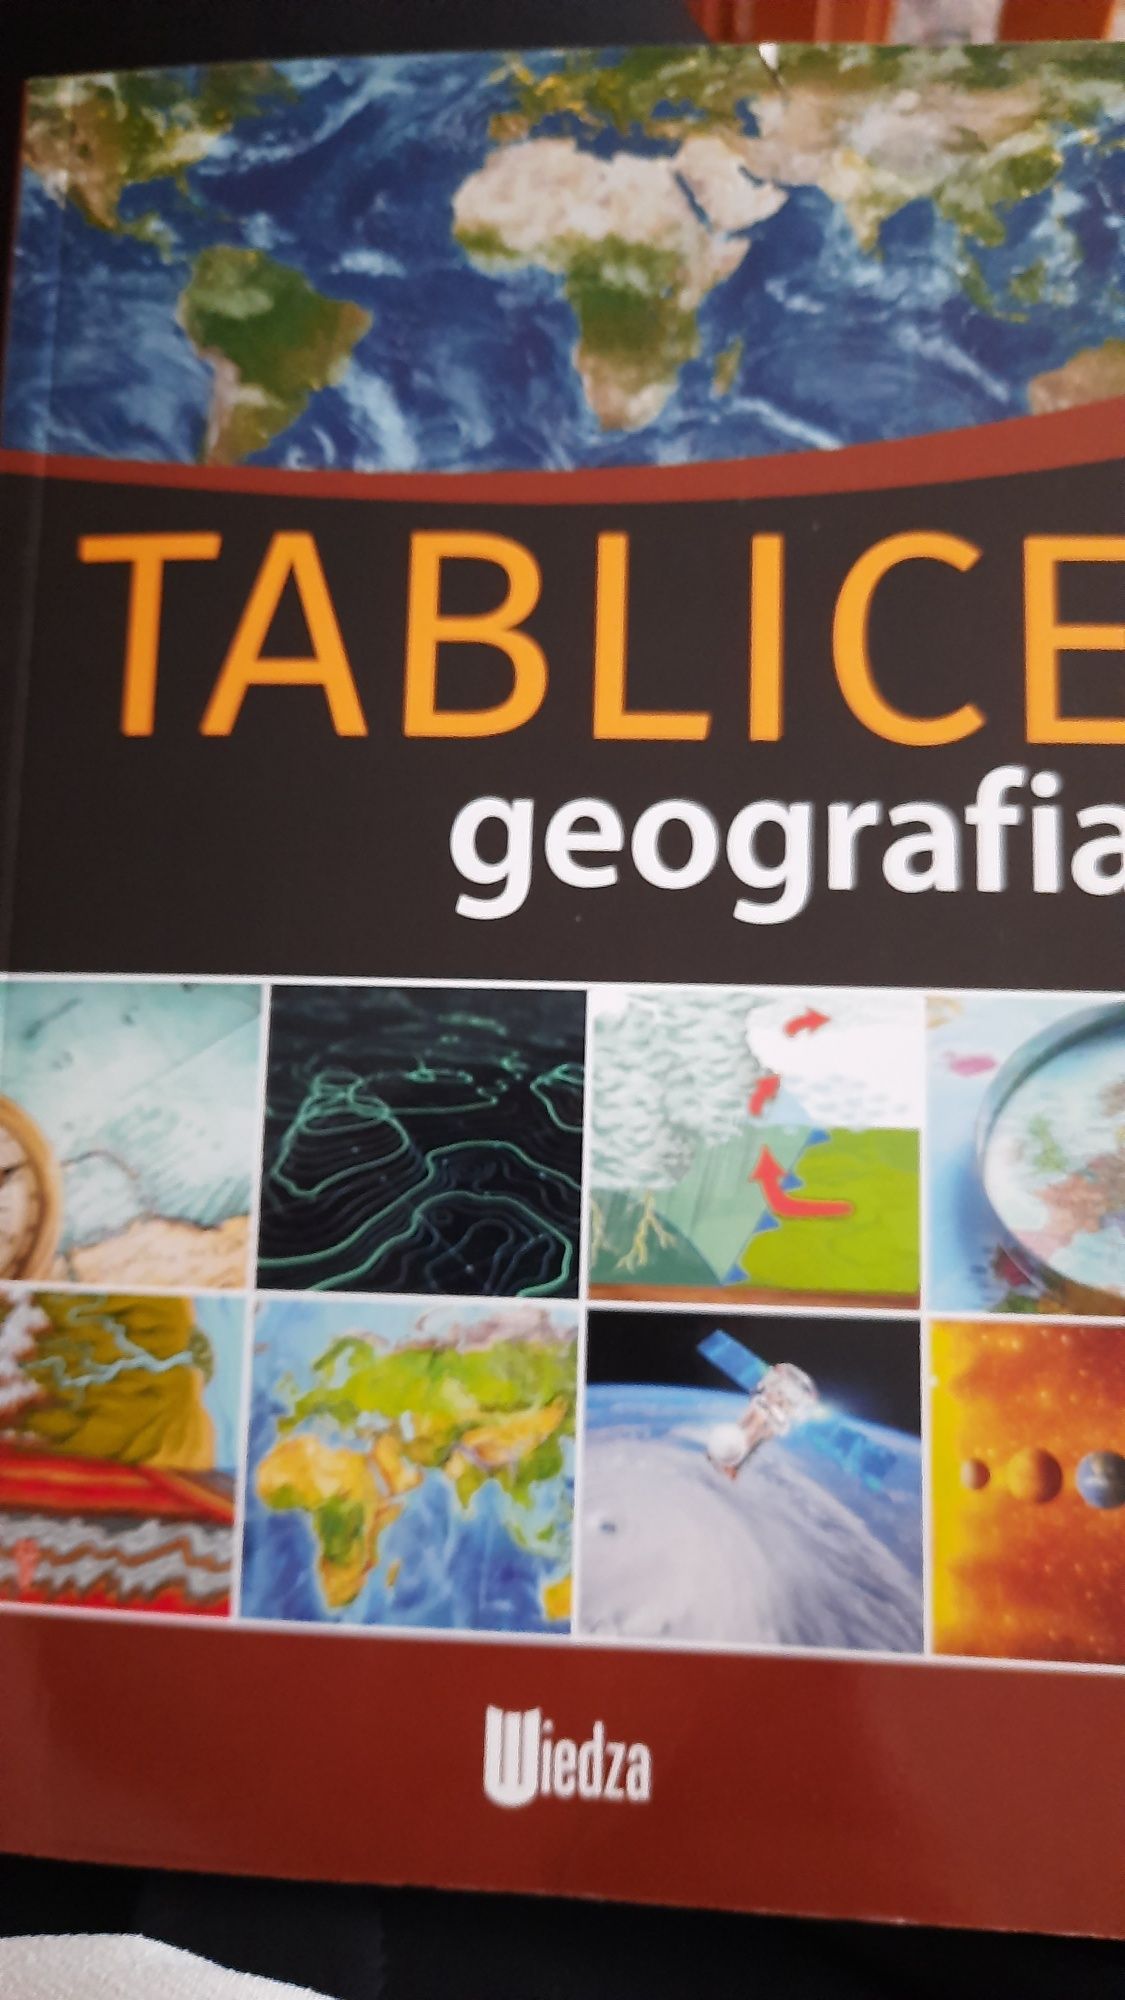 Tablice geografia. Wydawnictwo: Wiedza.